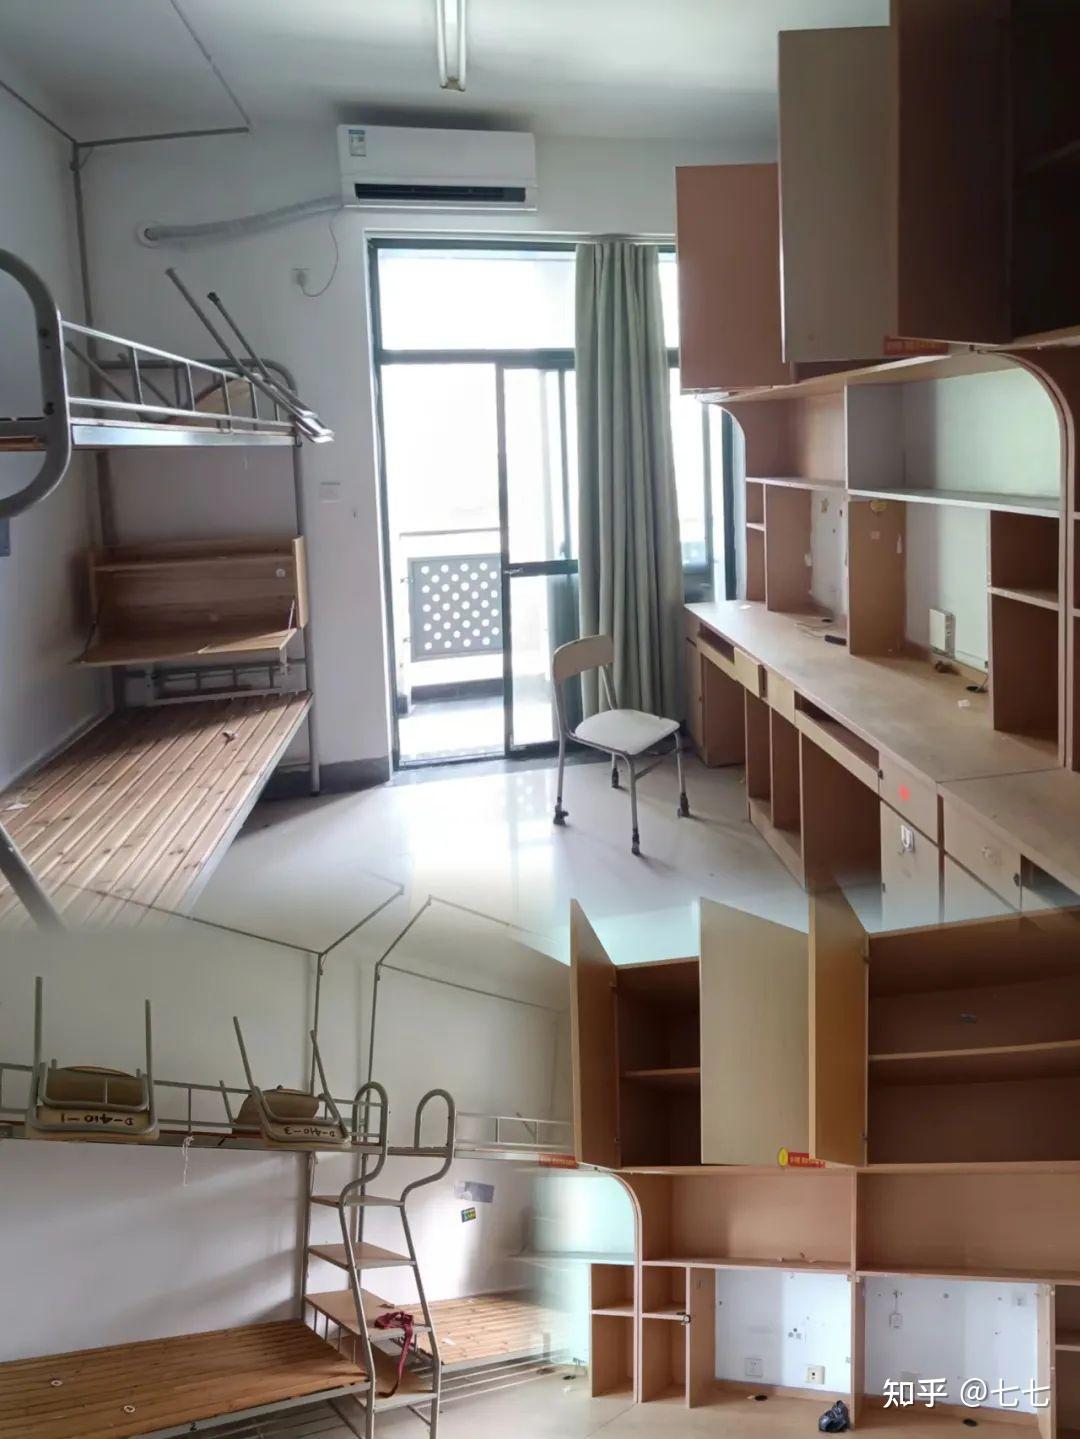 第三梯队南京艺术学院600/学年,作为宿舍黑榜,南艺的宿舍环境一直以来